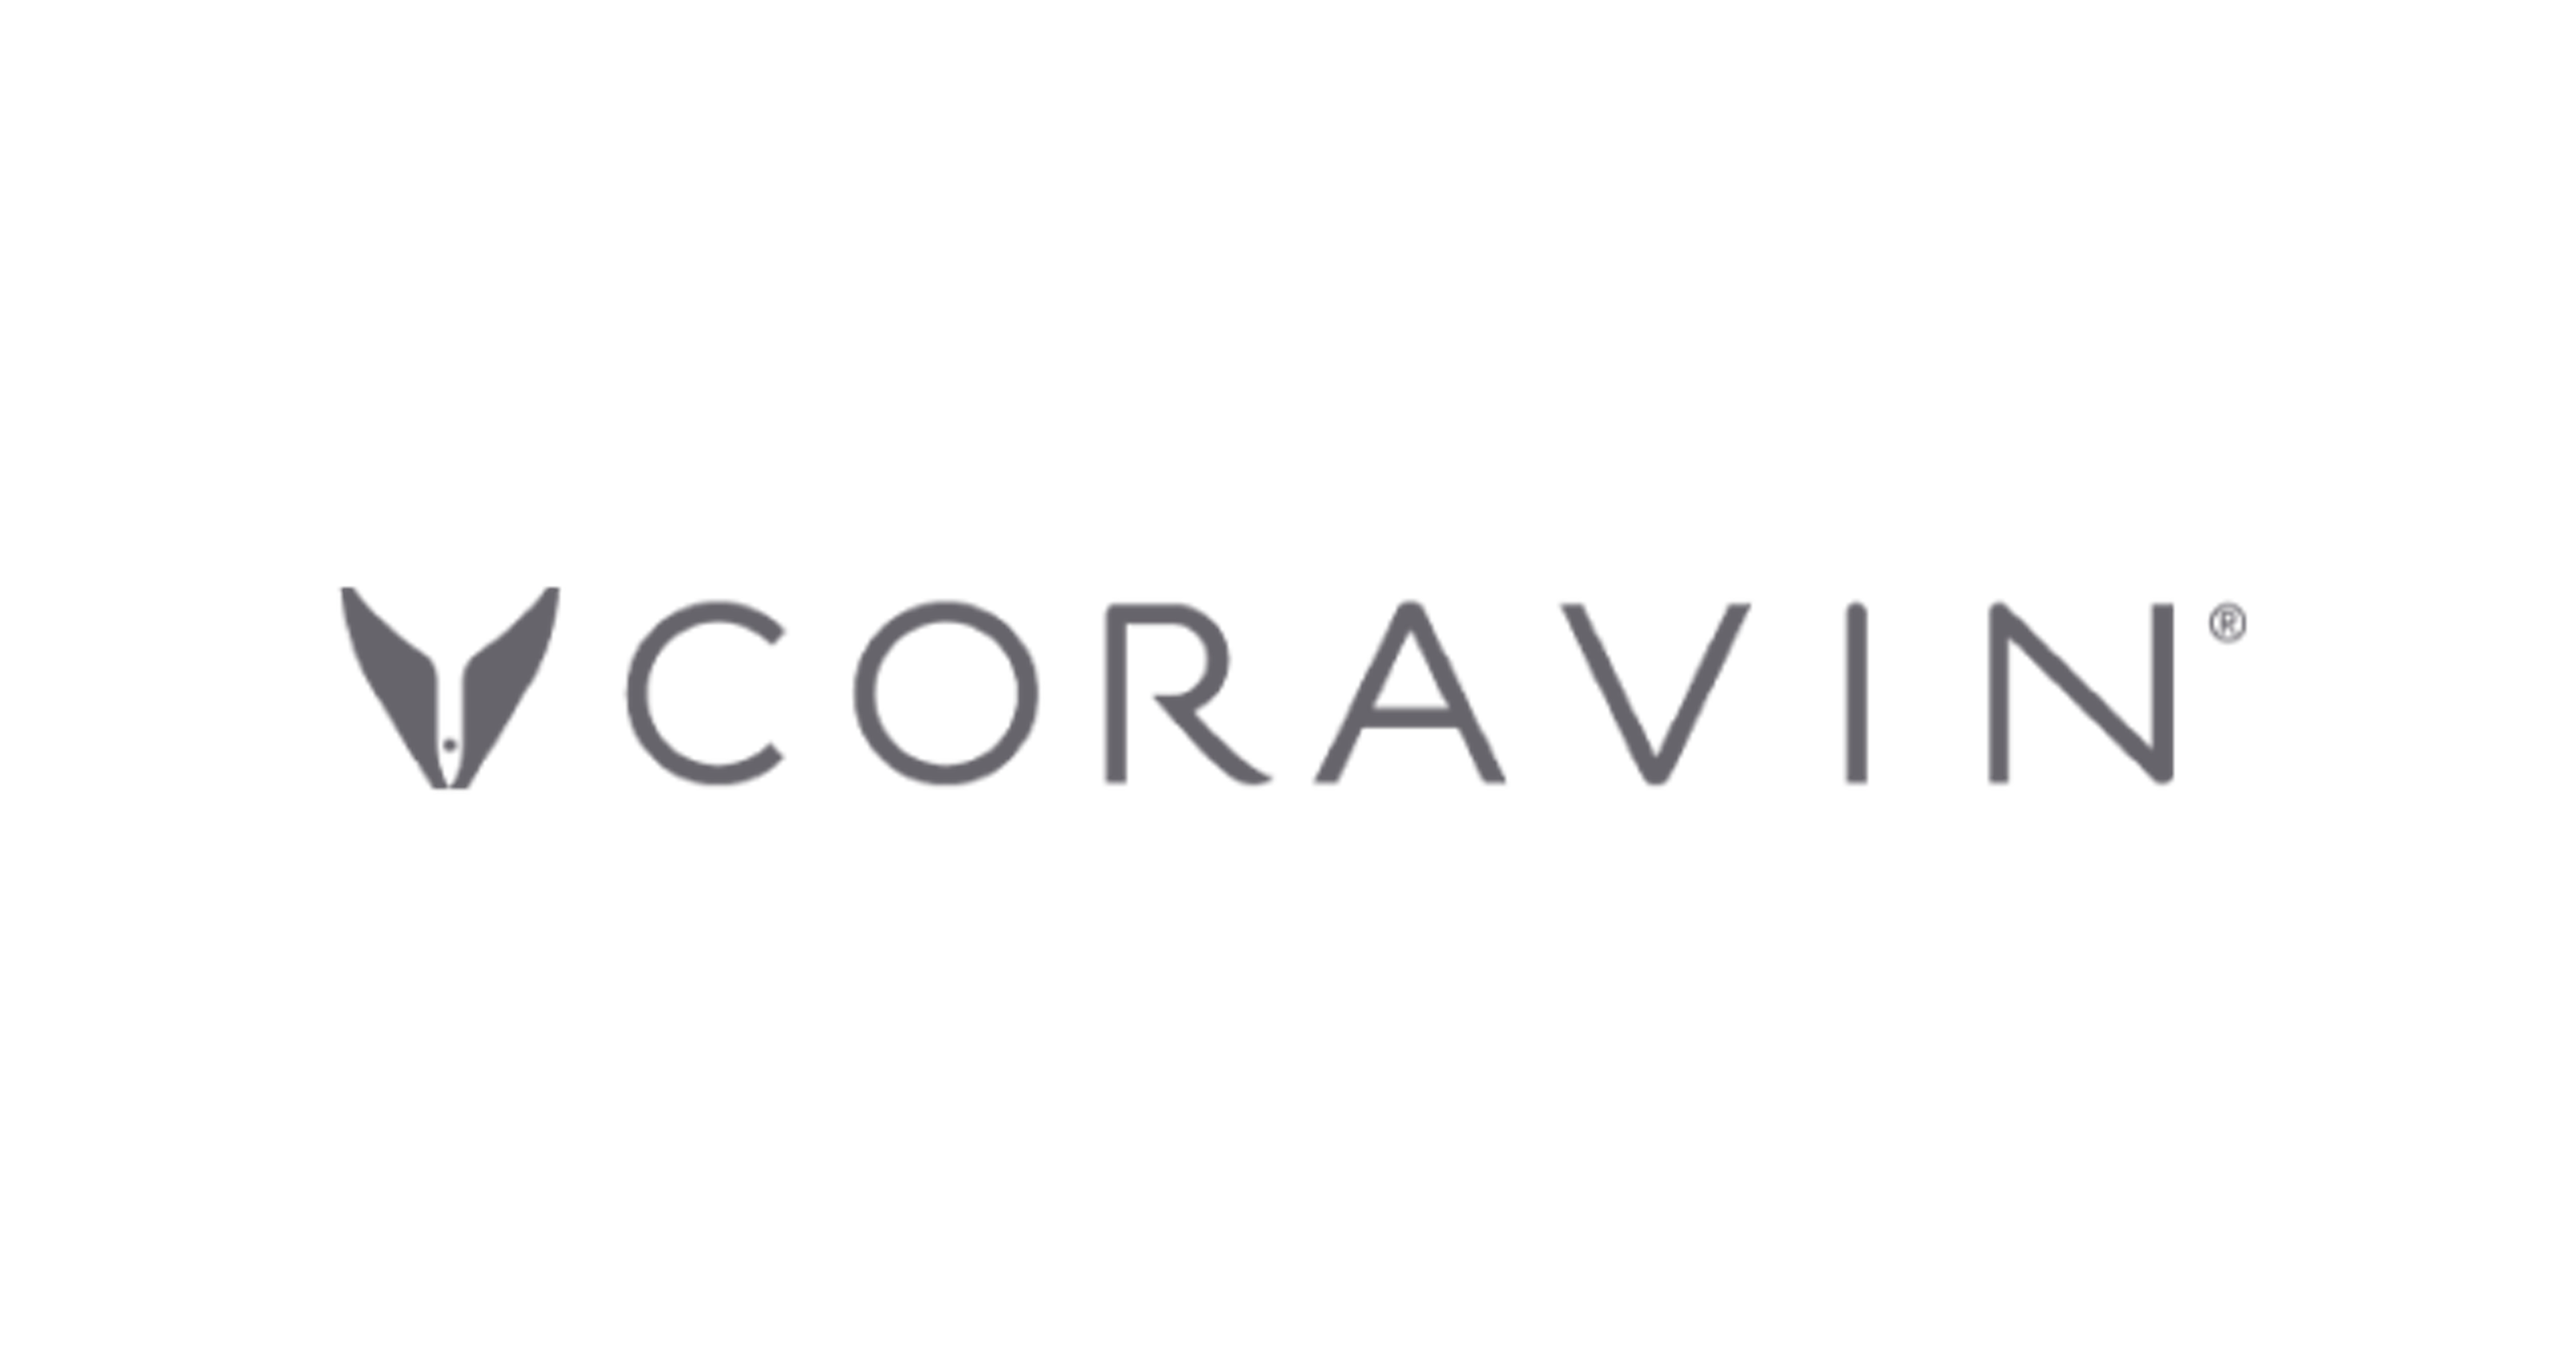 Coravin's logo.